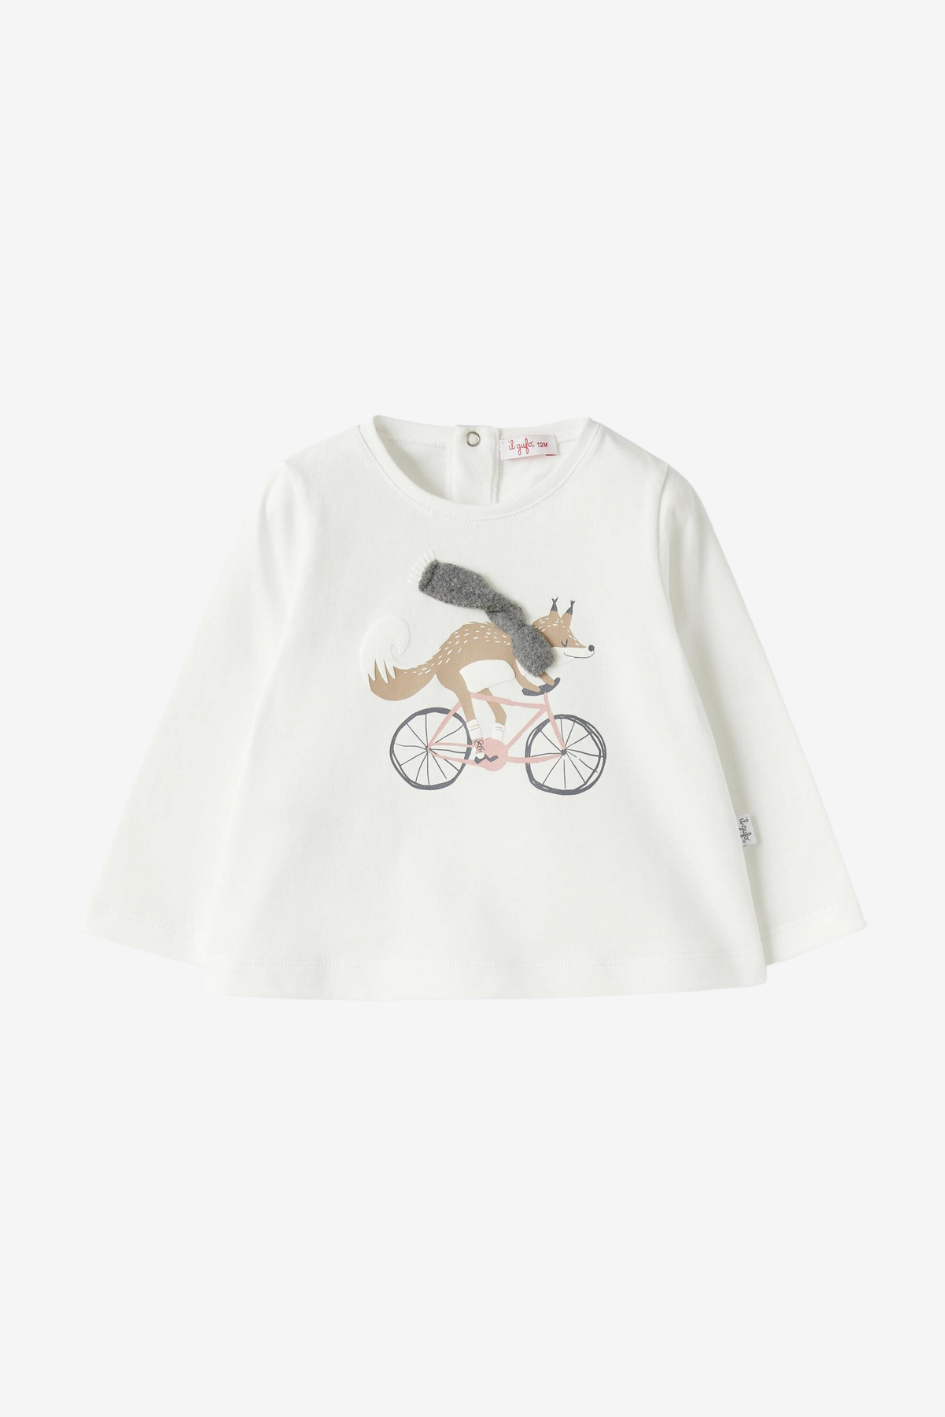 Print-T-Shirt für Mädchen mit Fuchs auf Fahrrad